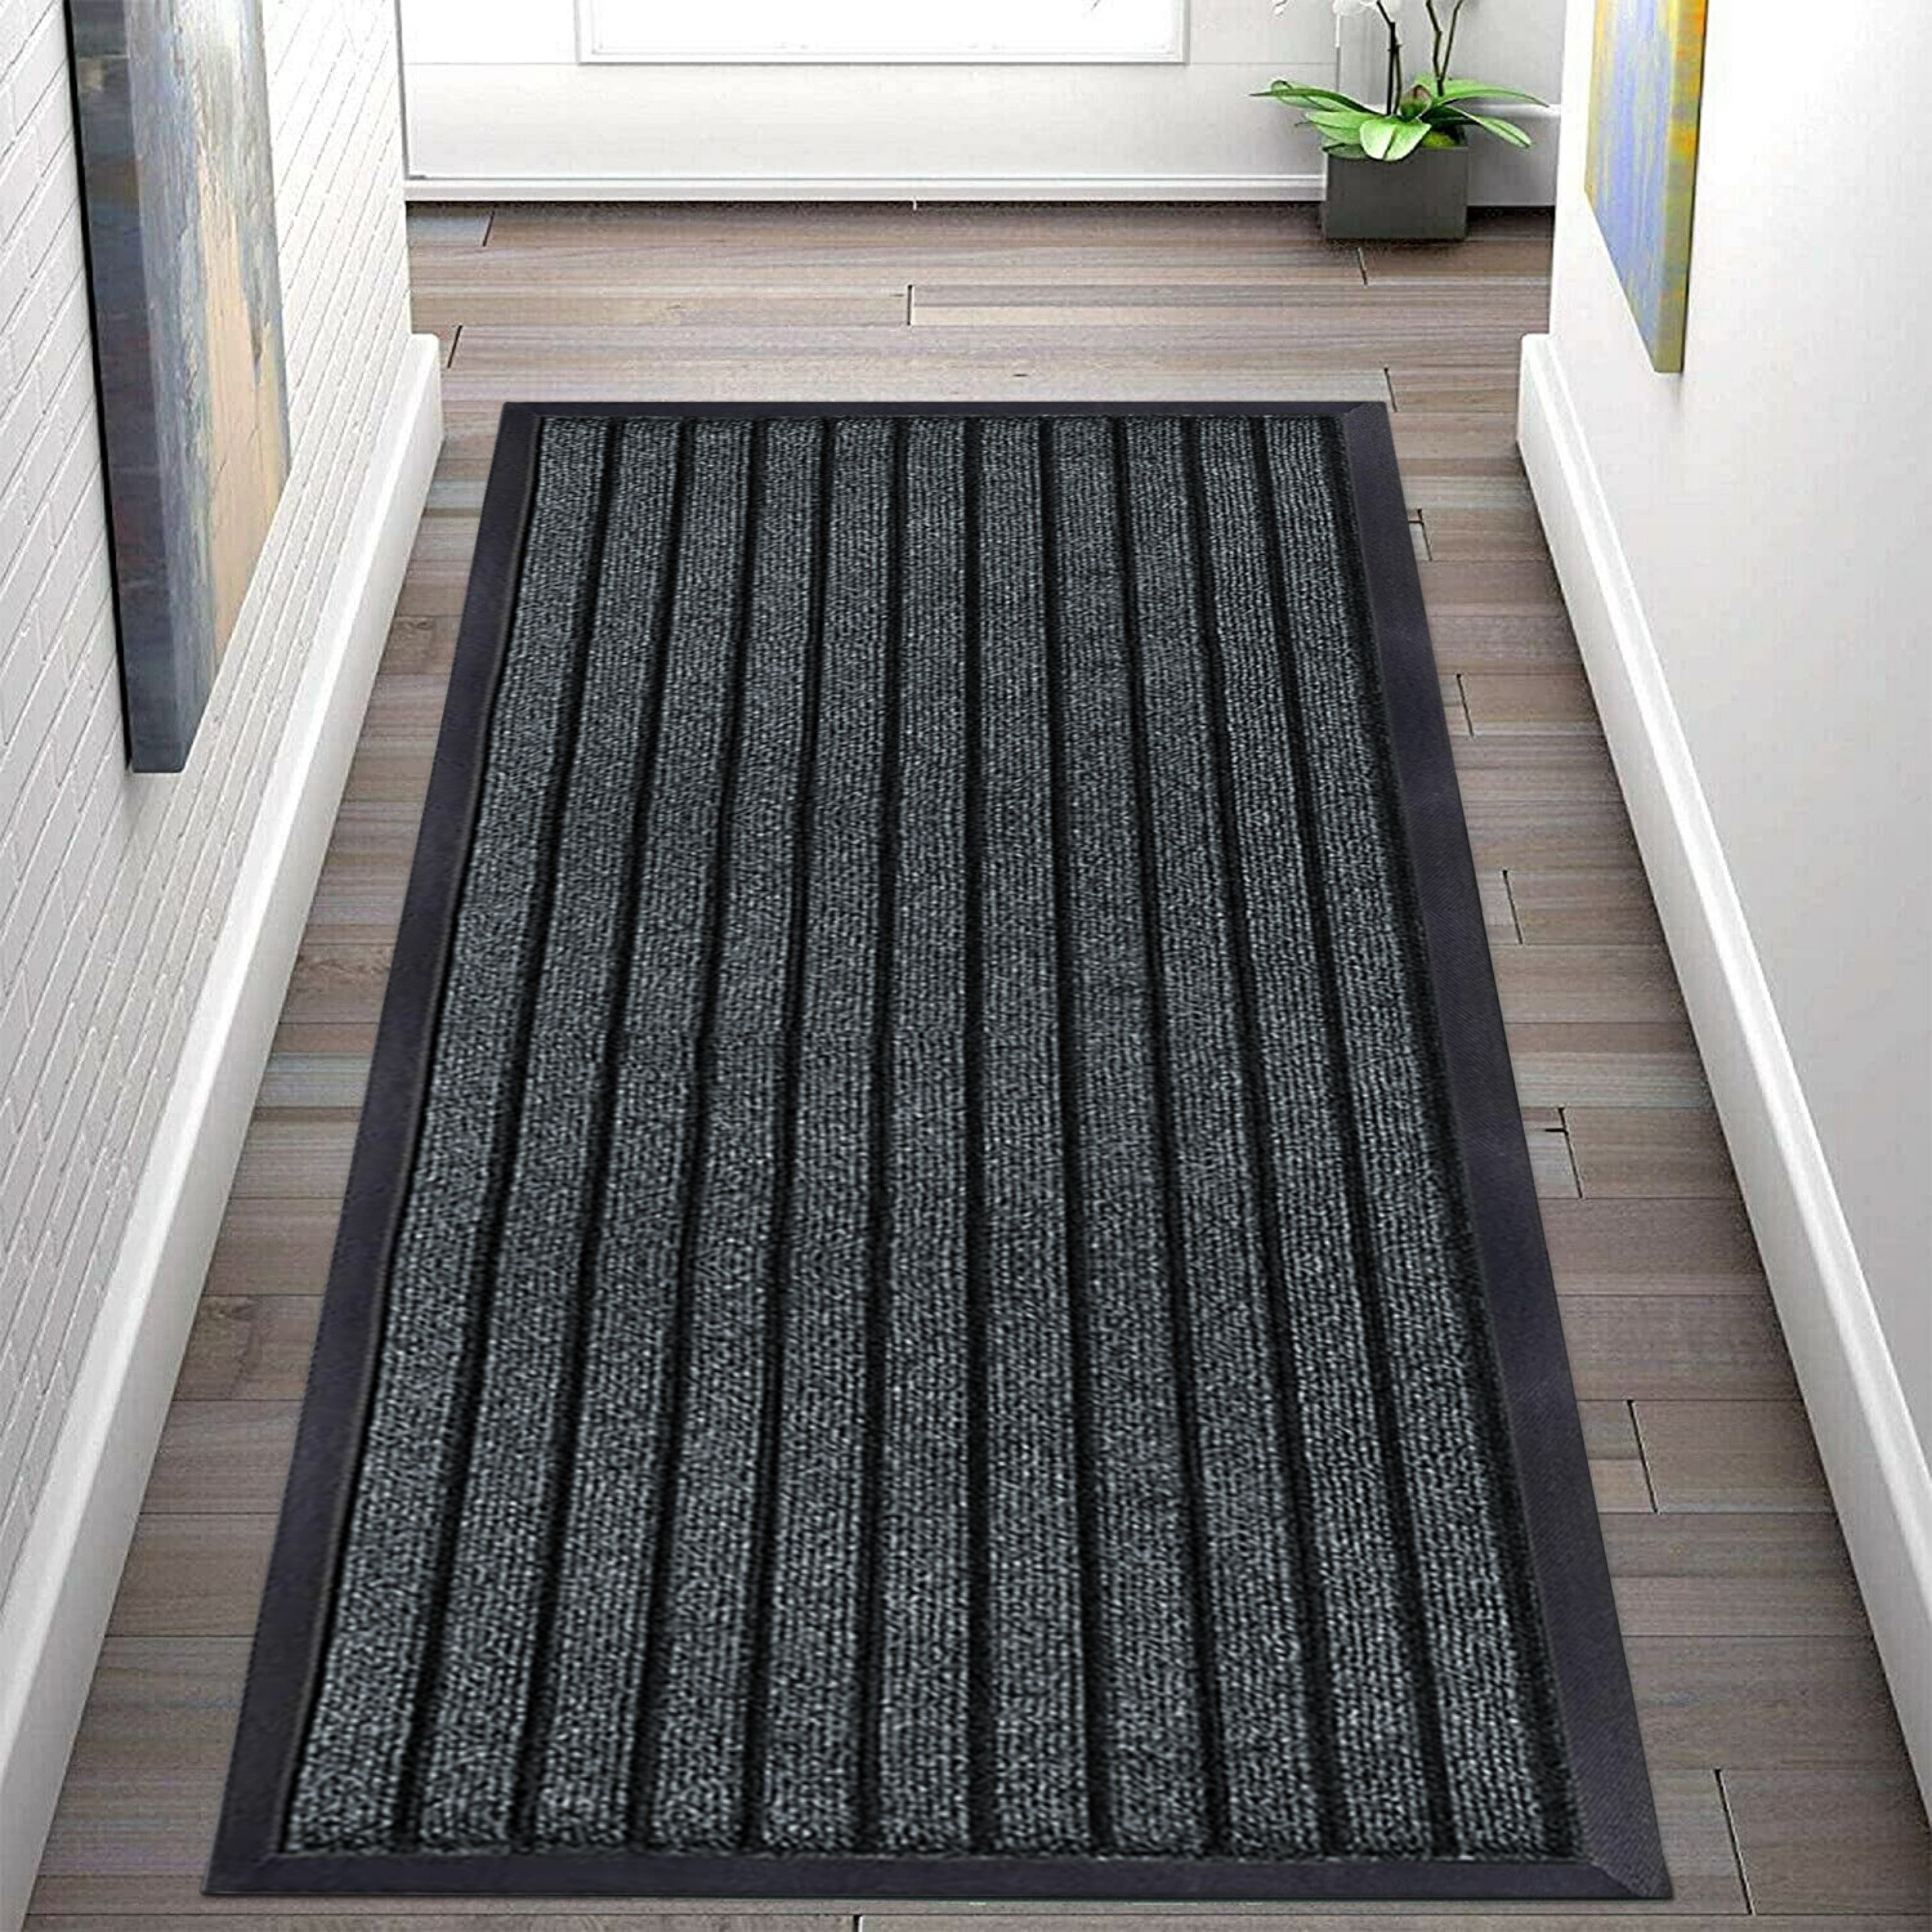 Kinadee Superior Non-slip Indoor/Outdoor Rubber Doormats 17 Stories Colour: Grey, Mat Size: Rectangle 60 x 90cm